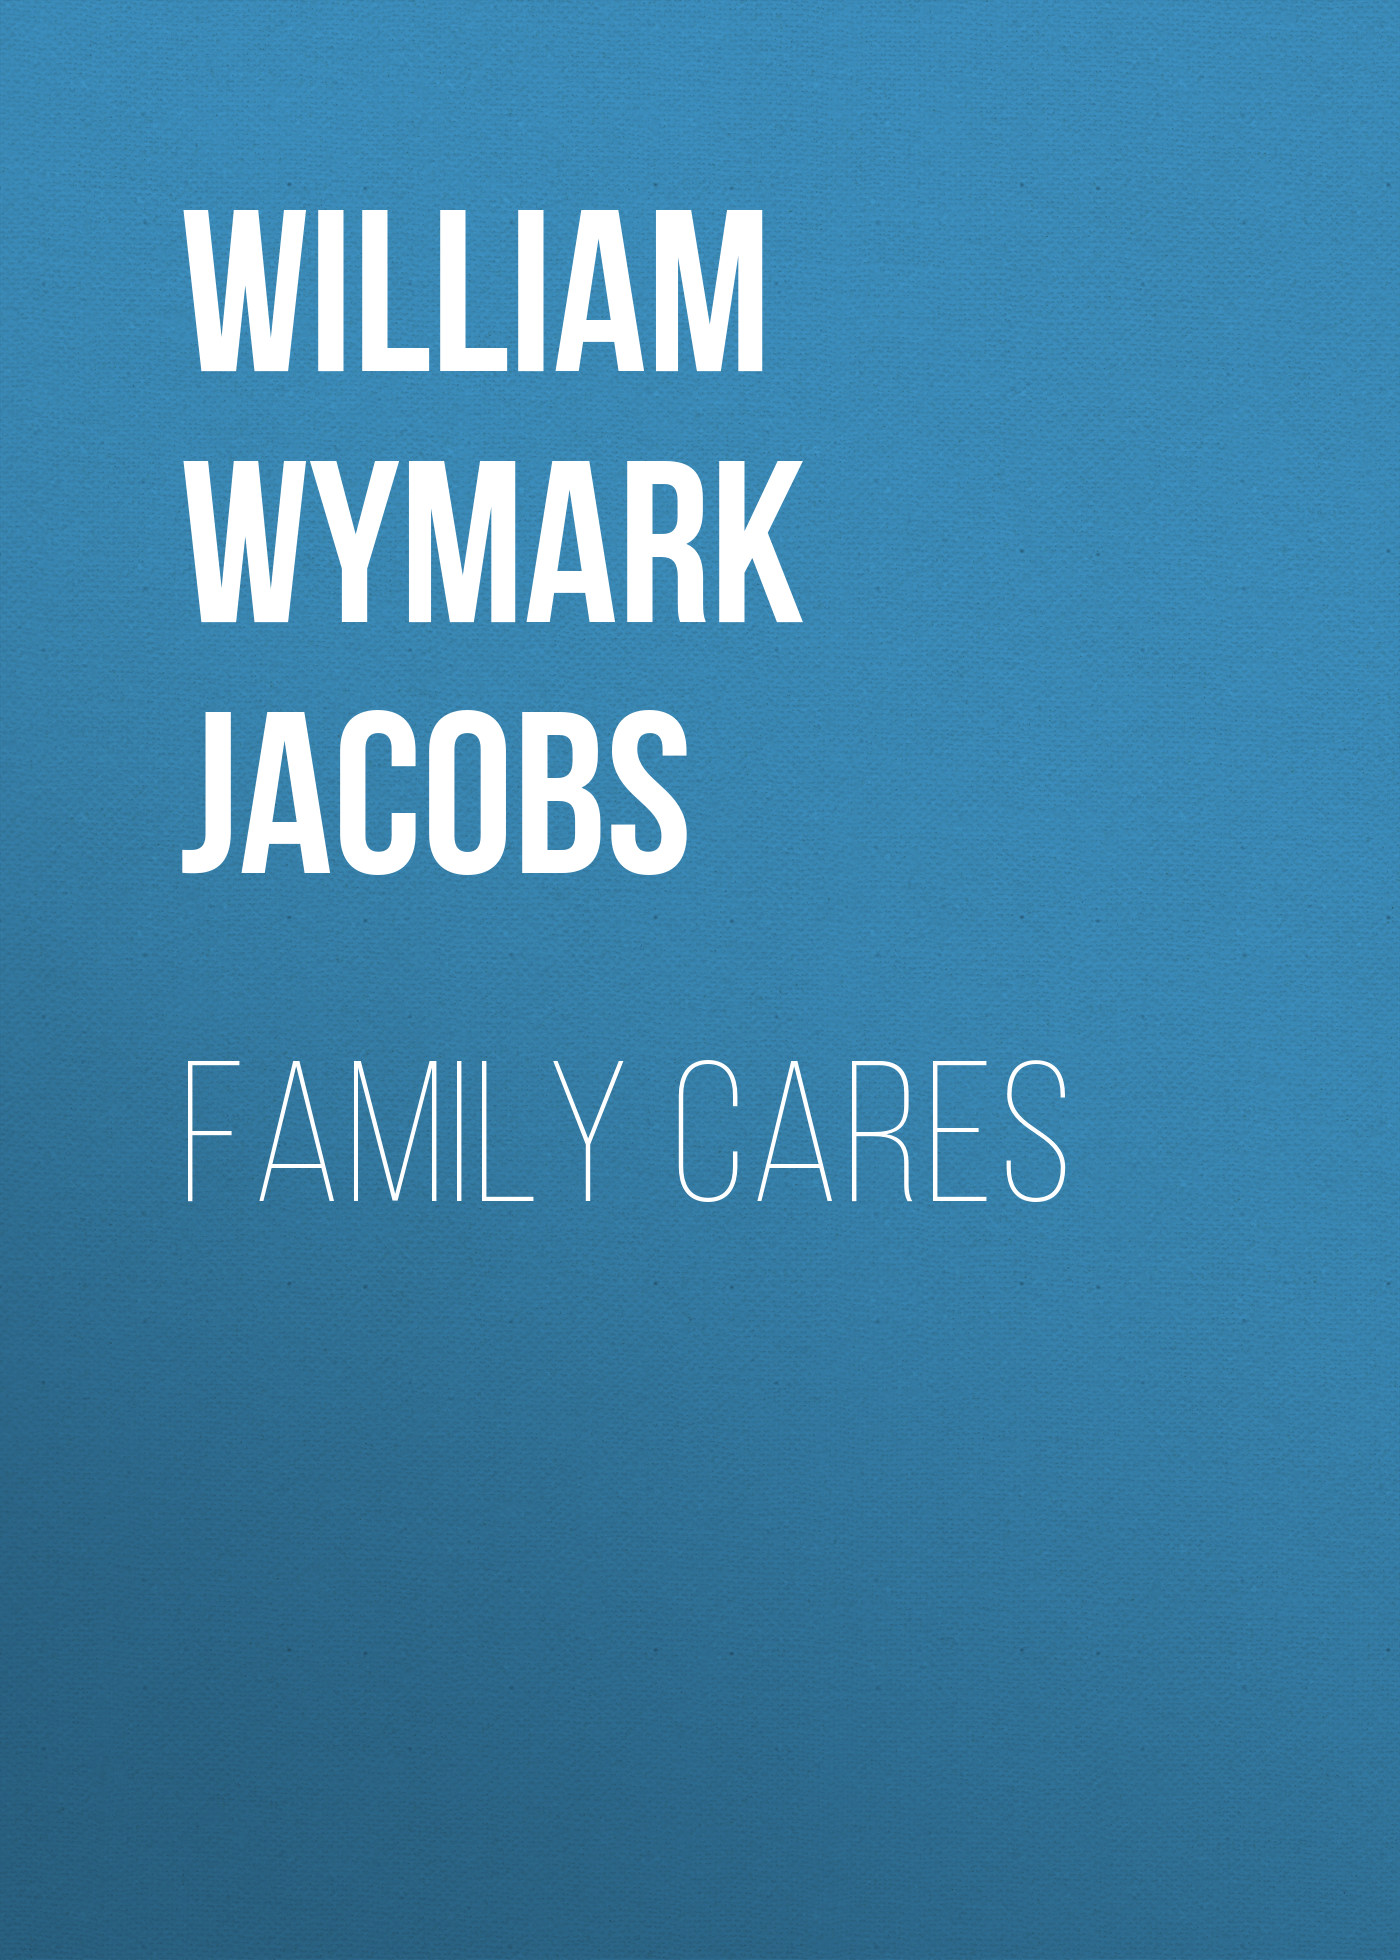 Книга Family Cares из серии , созданная William Wymark Jacobs, может относится к жанру Зарубежная классика, Зарубежная старинная литература. Стоимость электронной книги Family Cares с идентификатором 34844054 составляет 0 руб.